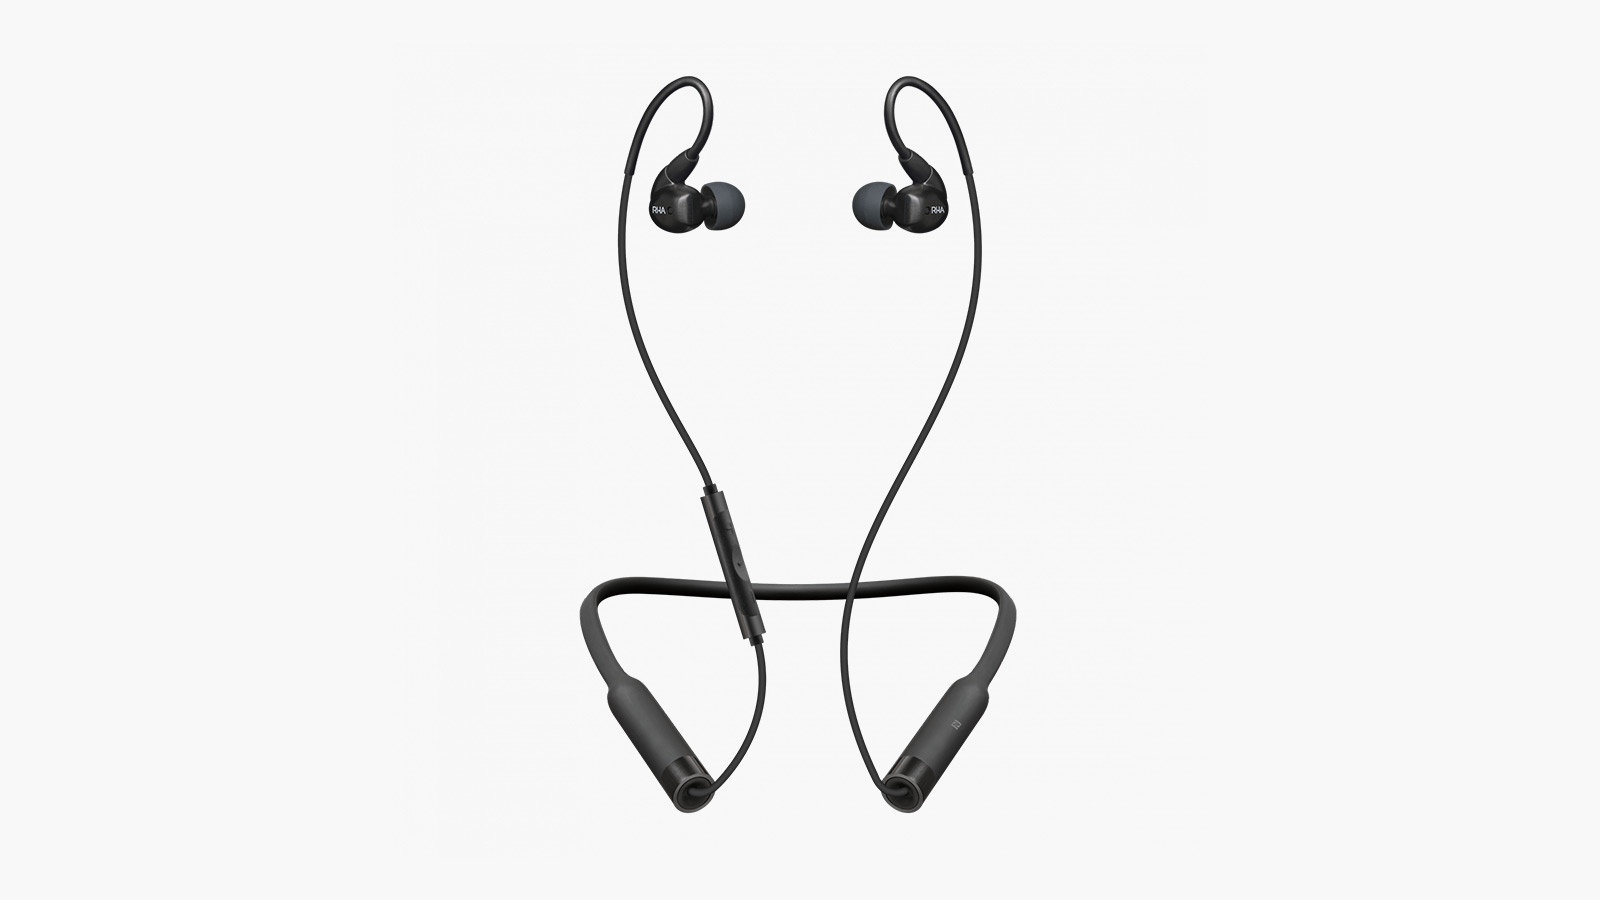 RHA T20 Wireless In-Ear Headphones